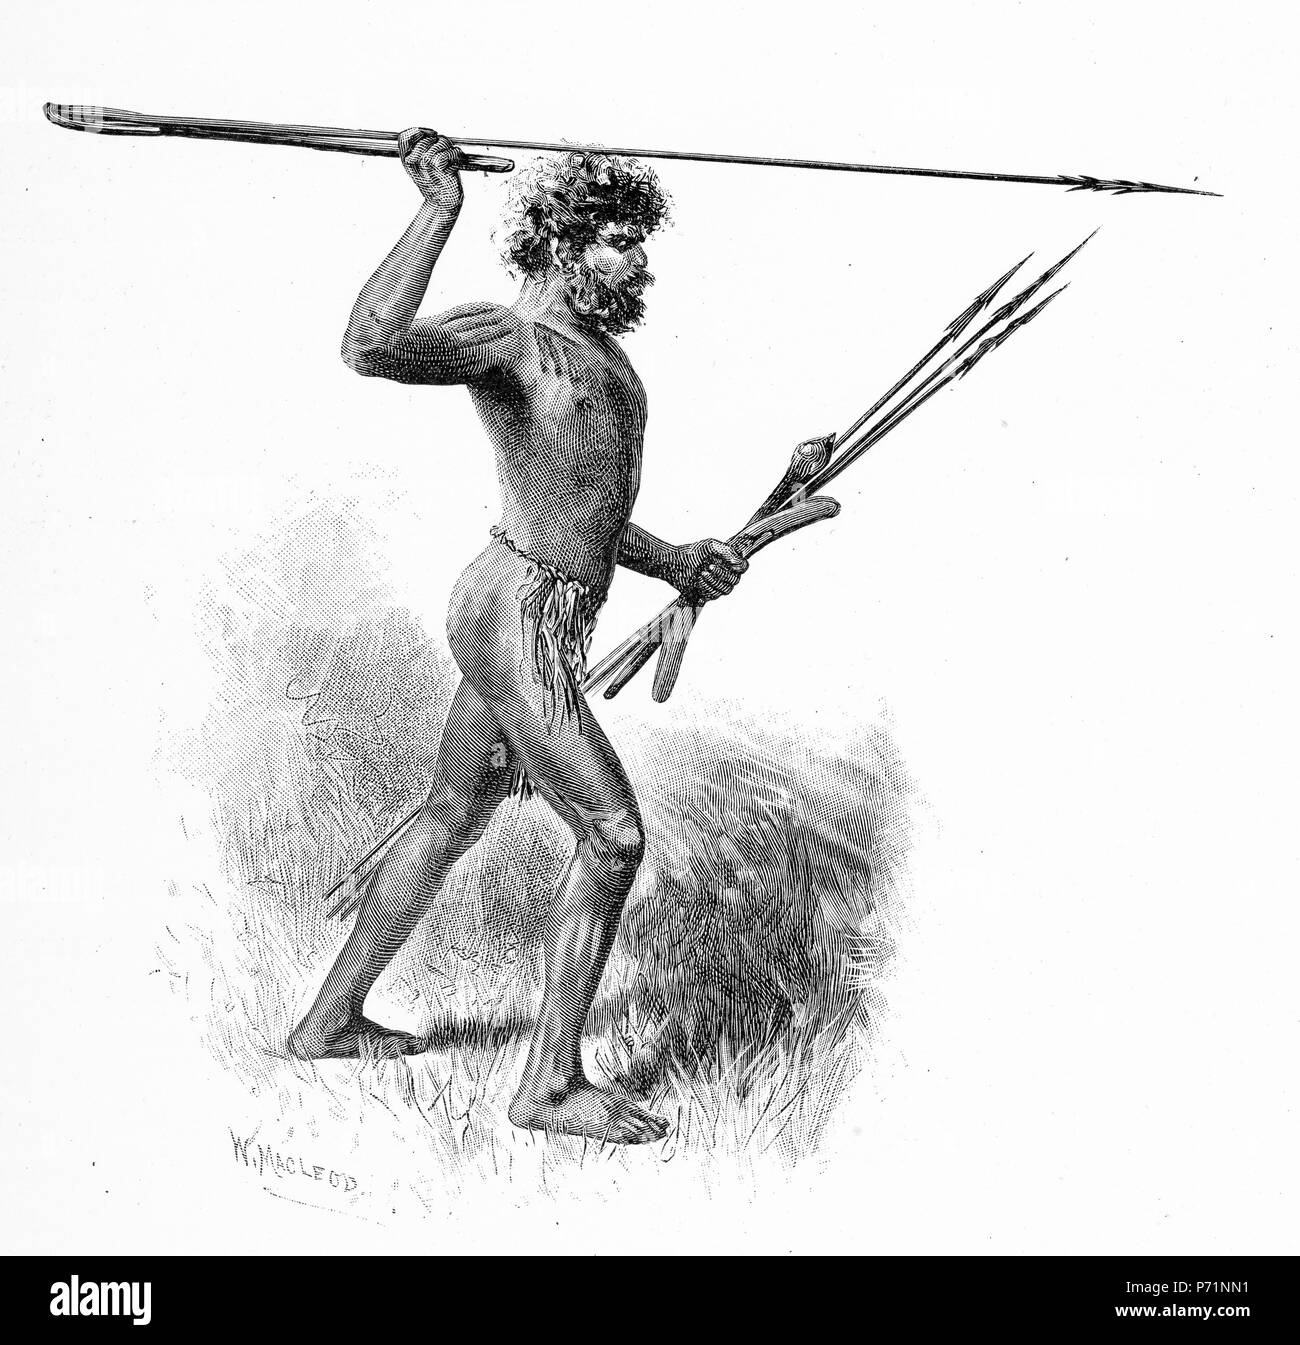 Gravure d'un guerrier autochtone jetant une lance à l'aide d'un bâton, ou jeter de Woomera en Australie. À partir de l'Atlas pittoresque d'Australasie Vol 3, 1886 Banque D'Images